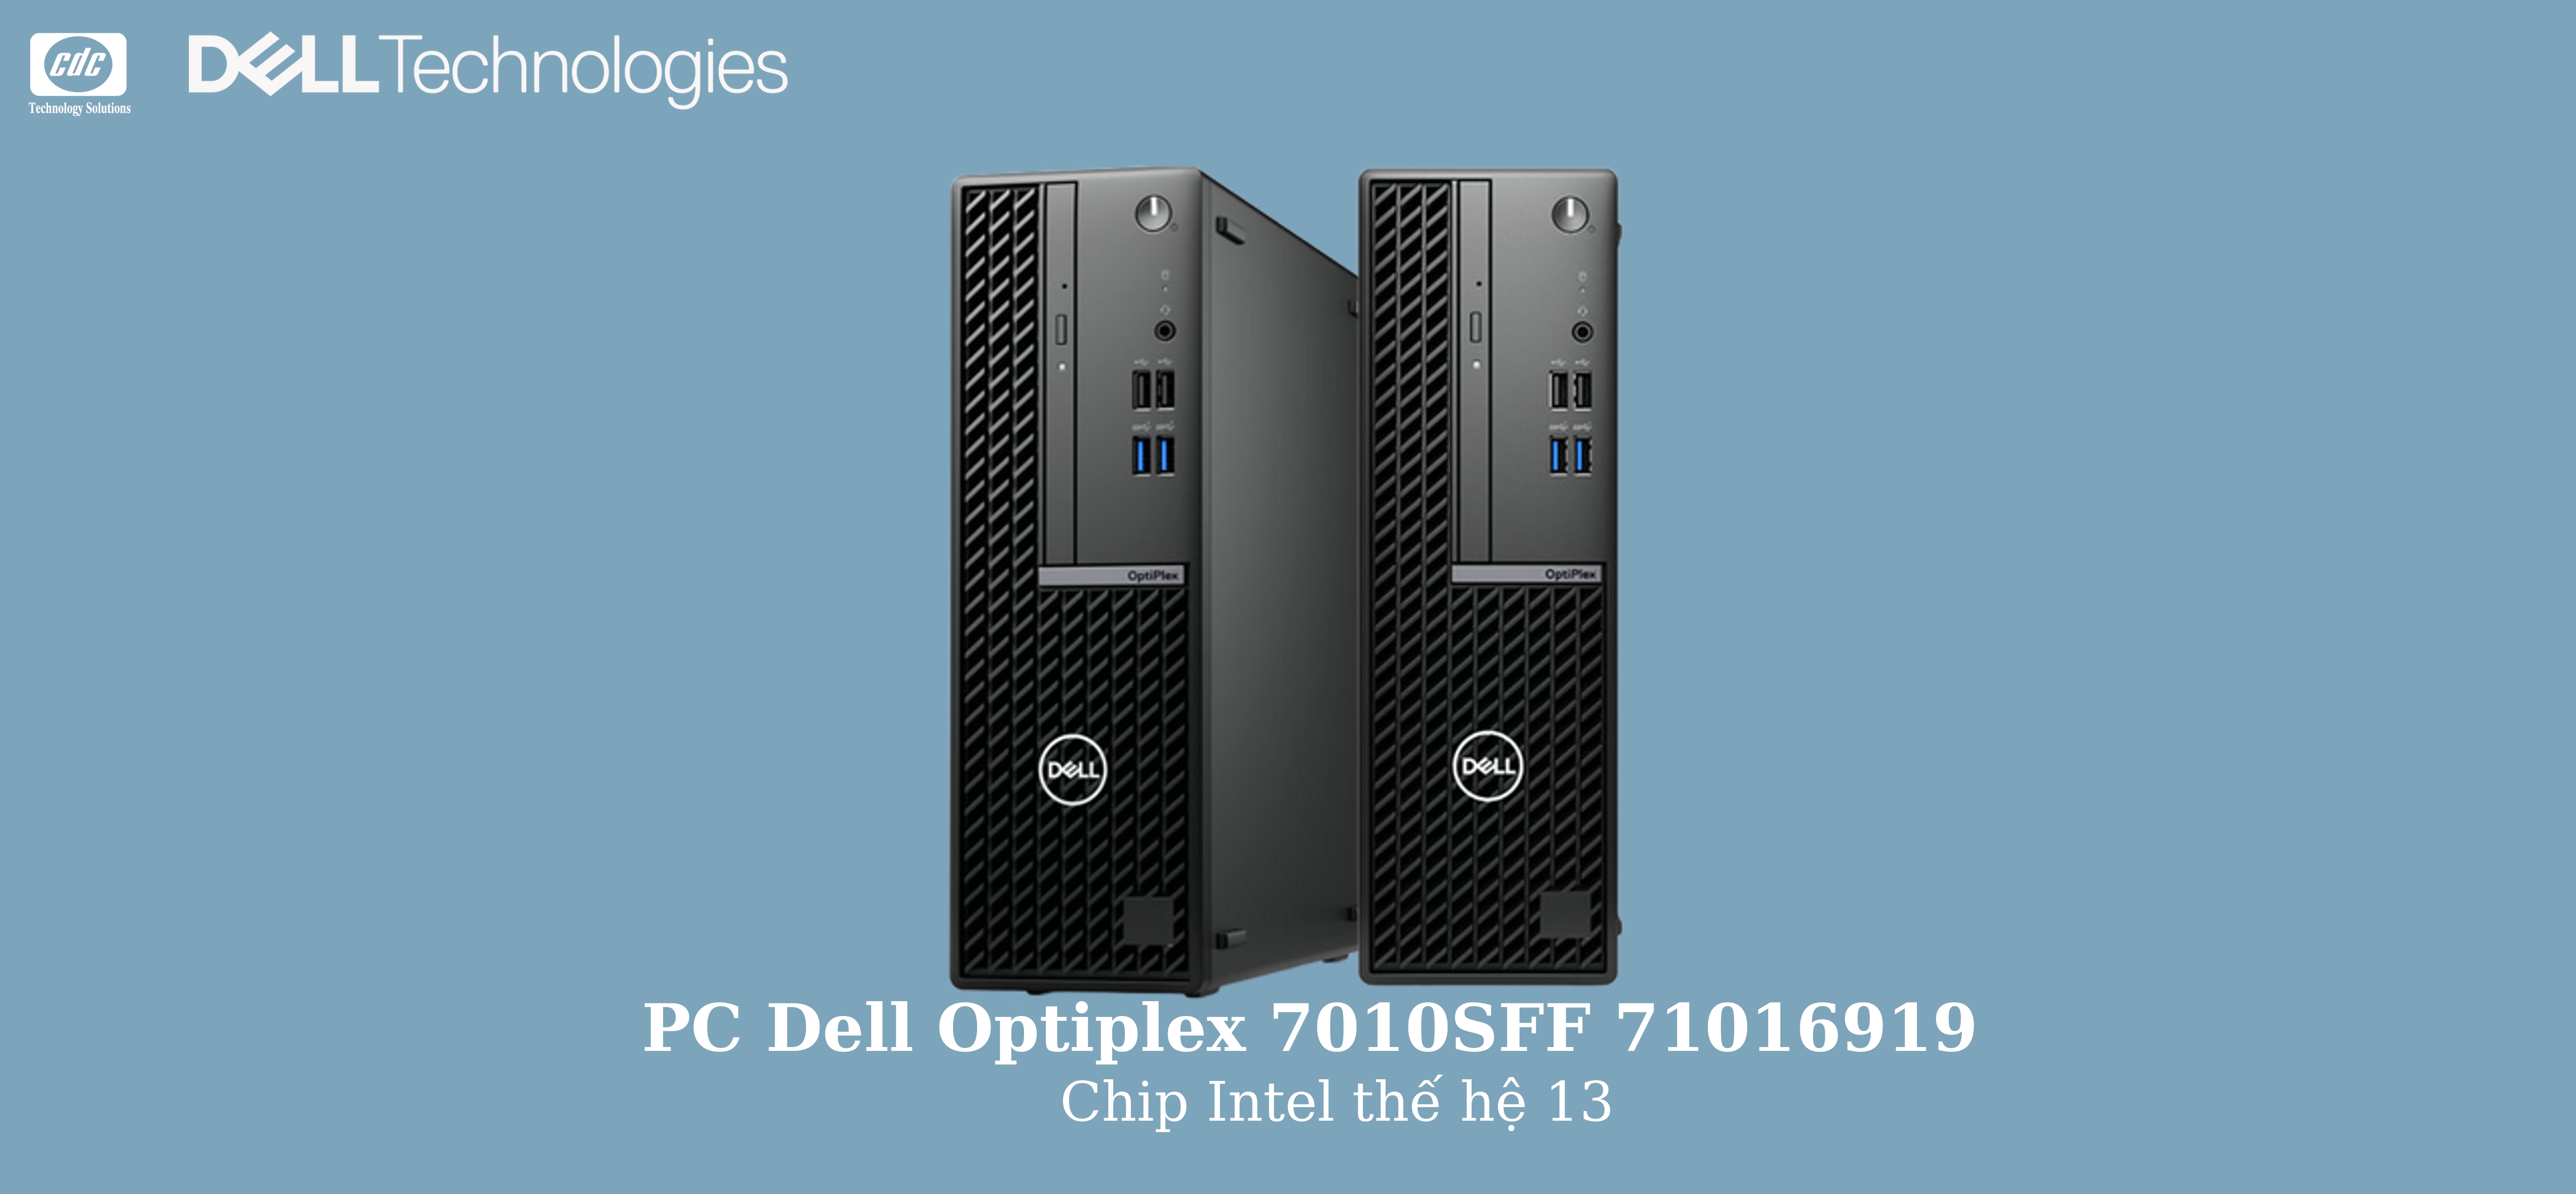 Banner PC Dell OptiPlex 7010 SFF – 71016919